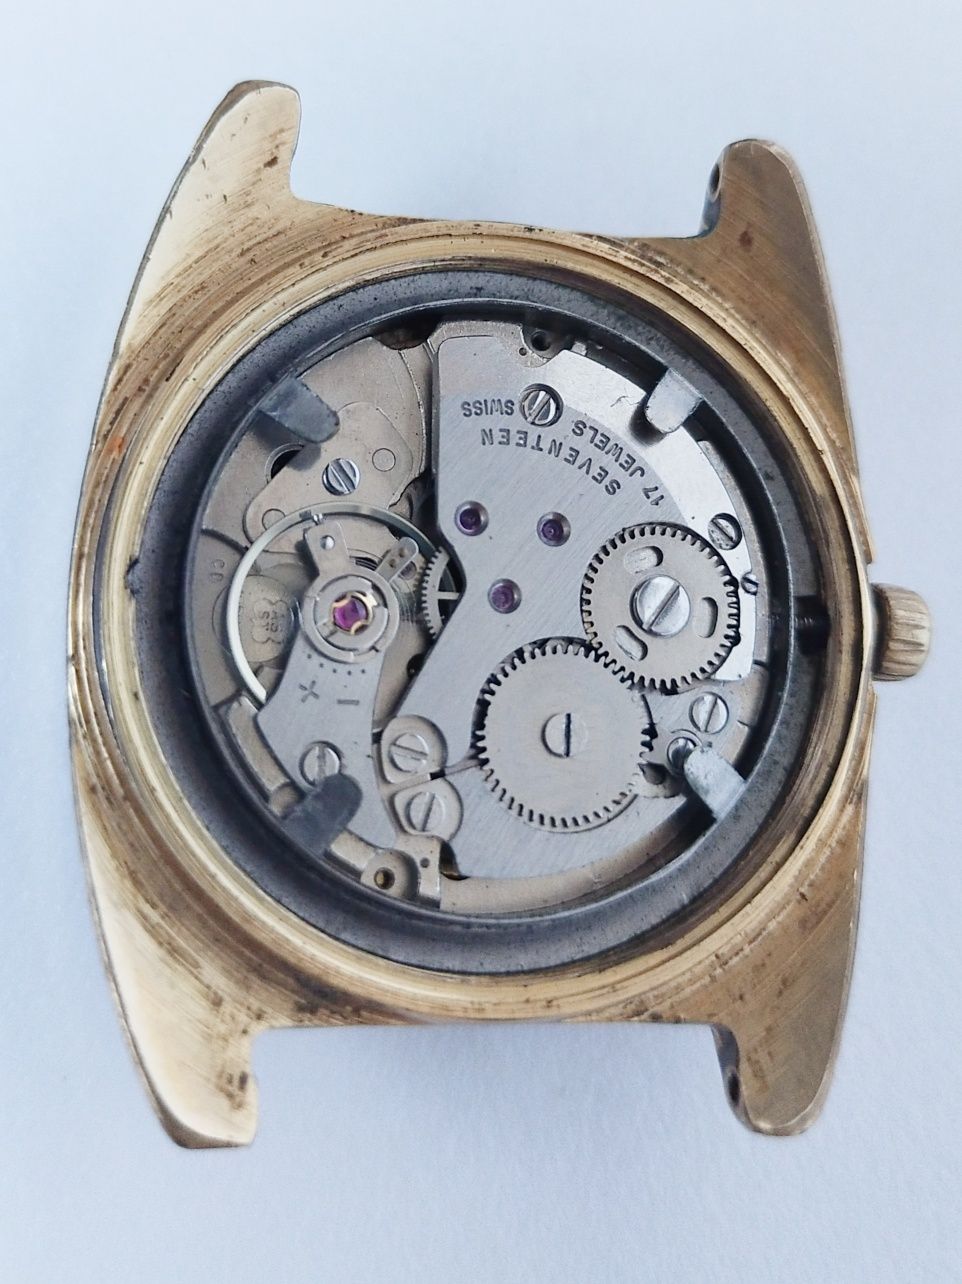 Zegarek Tsilla mechanizm AS ST 1950/51 do naprawy